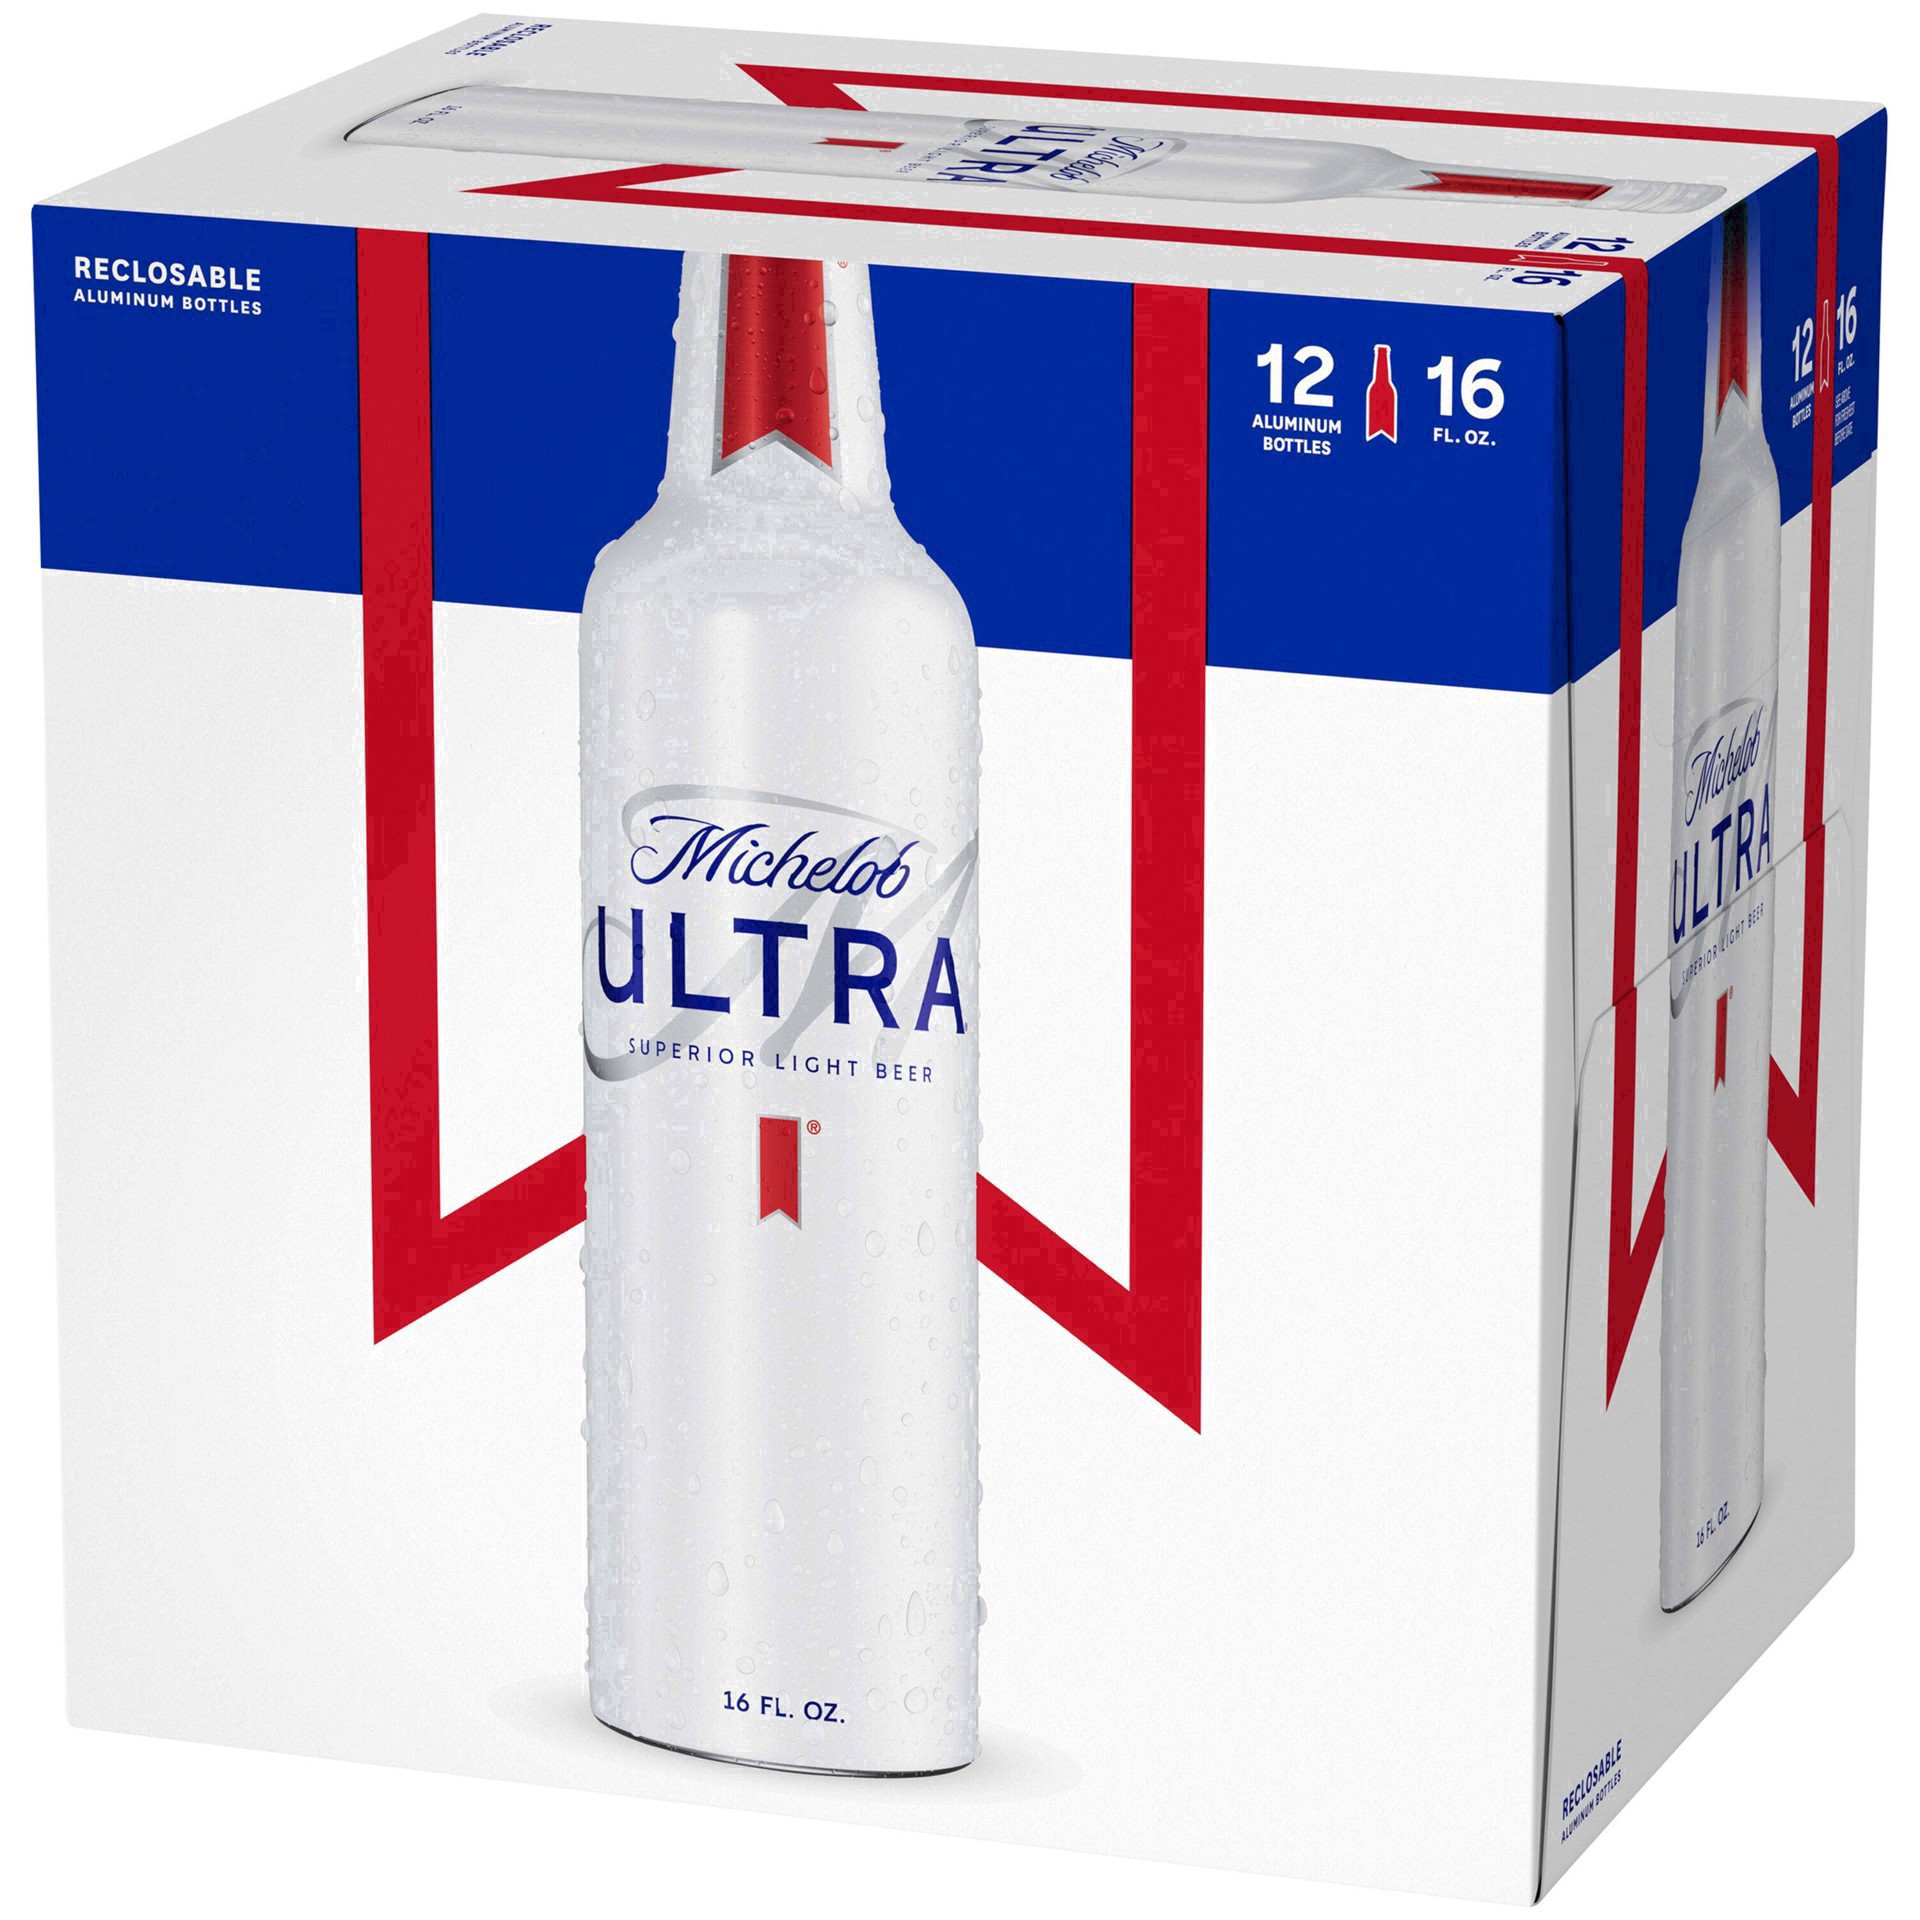 slide 19 of 103, Michelob ULTRA Light Beer, 12 Pack Beer, 16 FL OZ Bottles, 192 fl oz